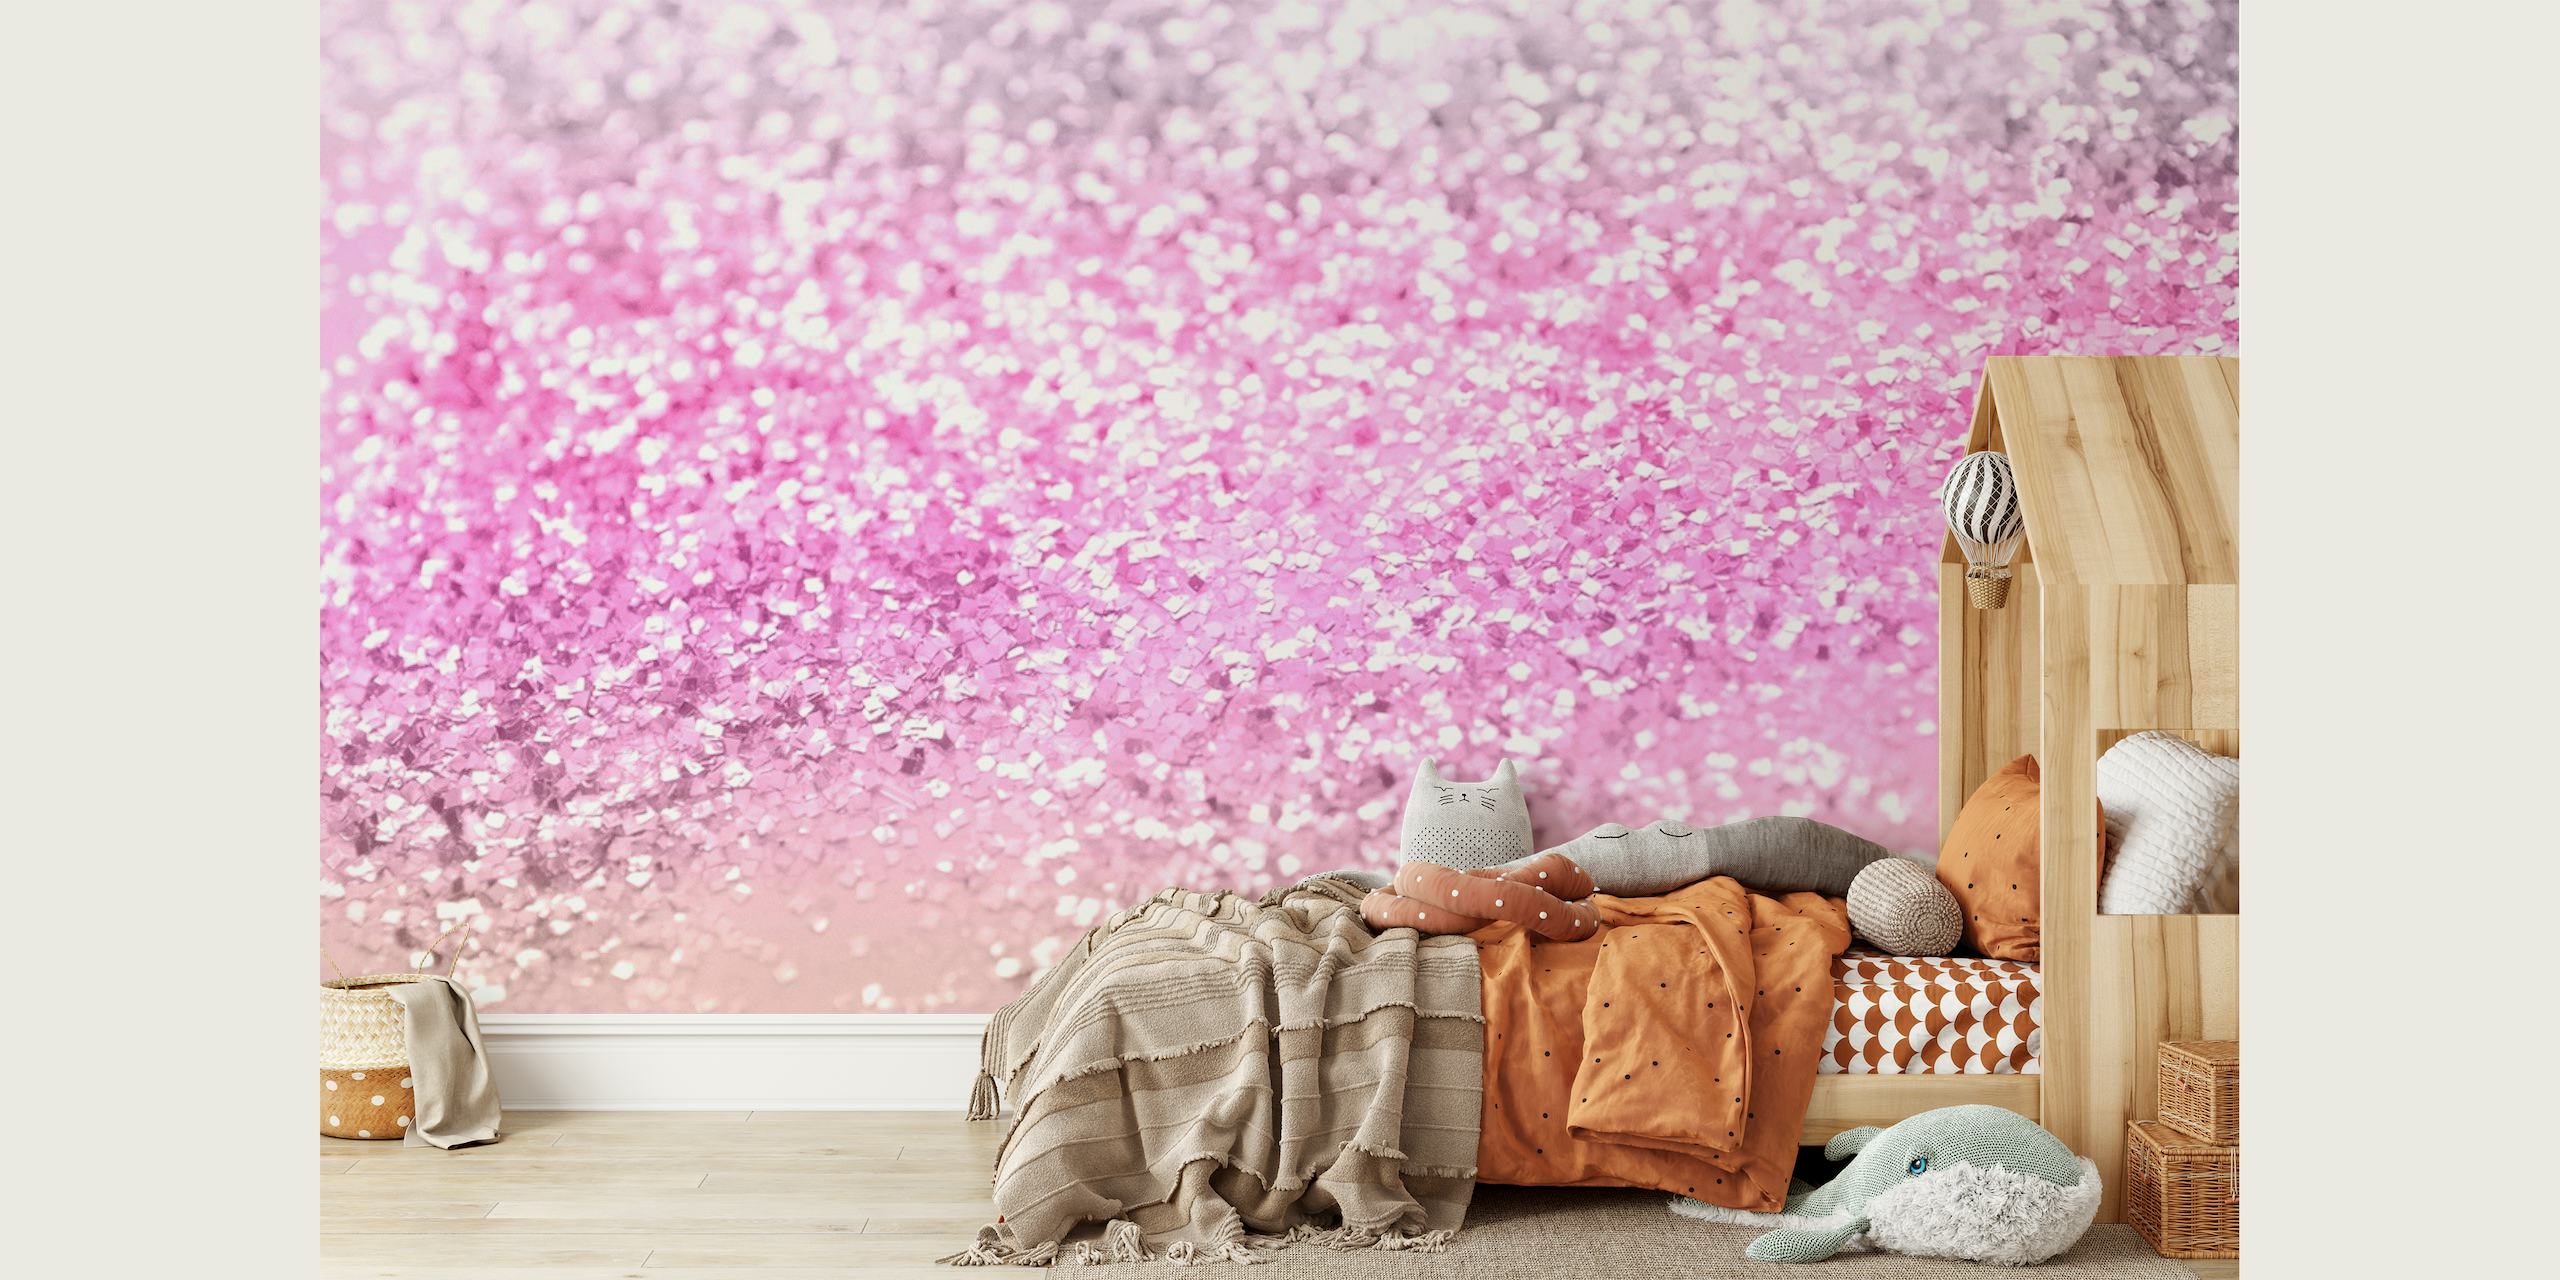 Glittergradiënt fotobehang in roze en zilver voor een magisch kamerthema